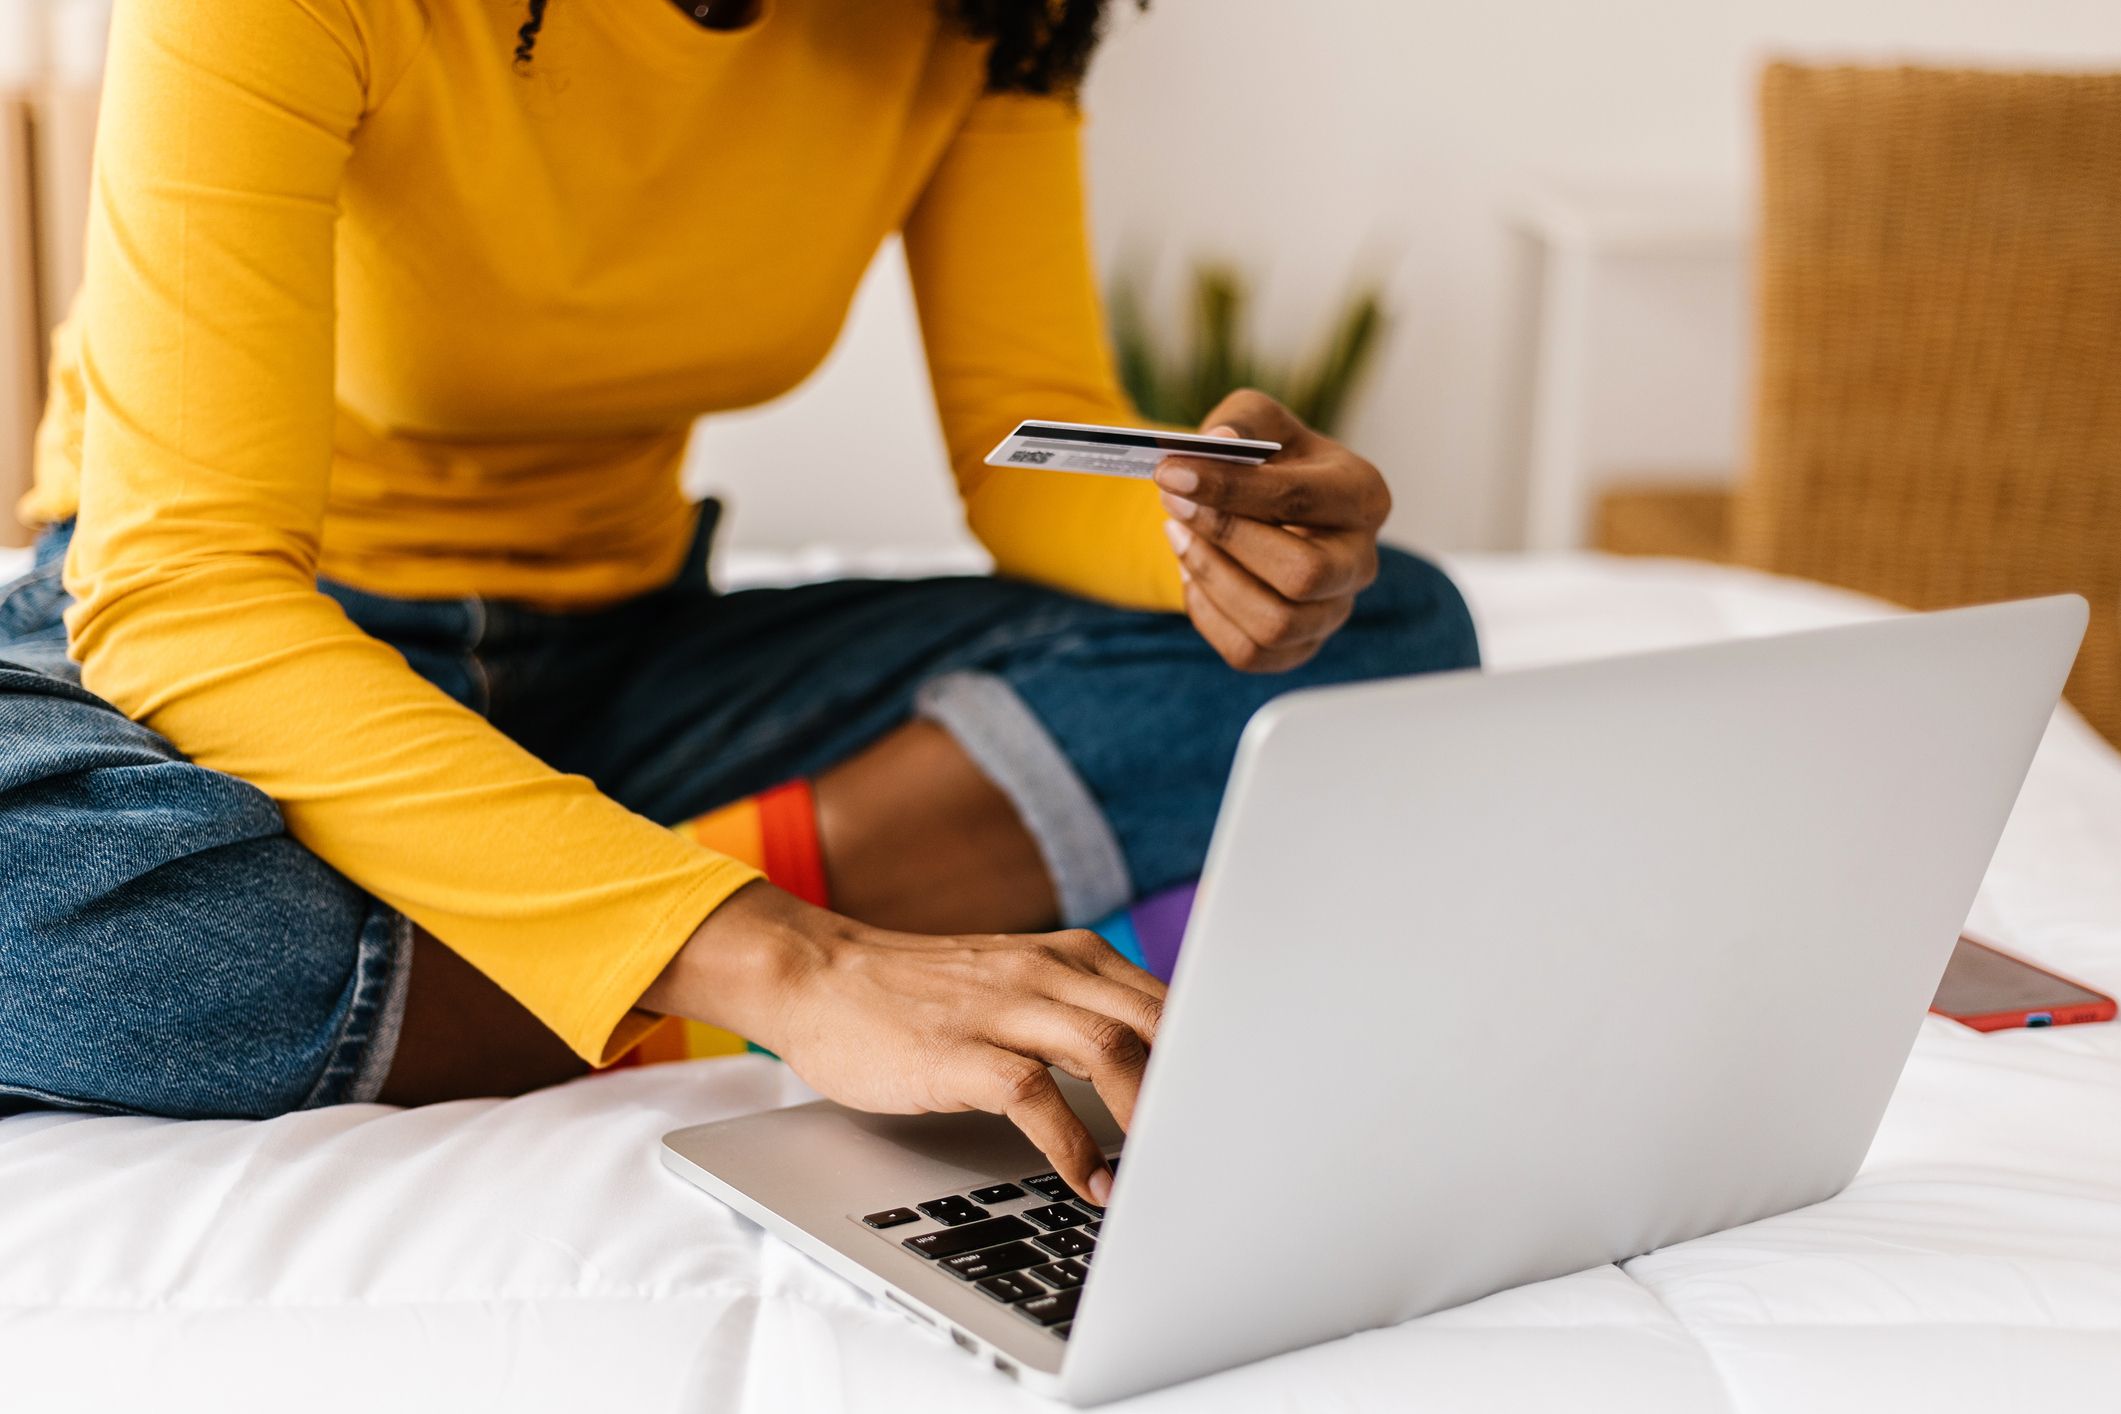 Nærbilde av dames hånd som holder et kredittkort for å utføre kjøp på laptop. E-handel og shopping online som konsept.